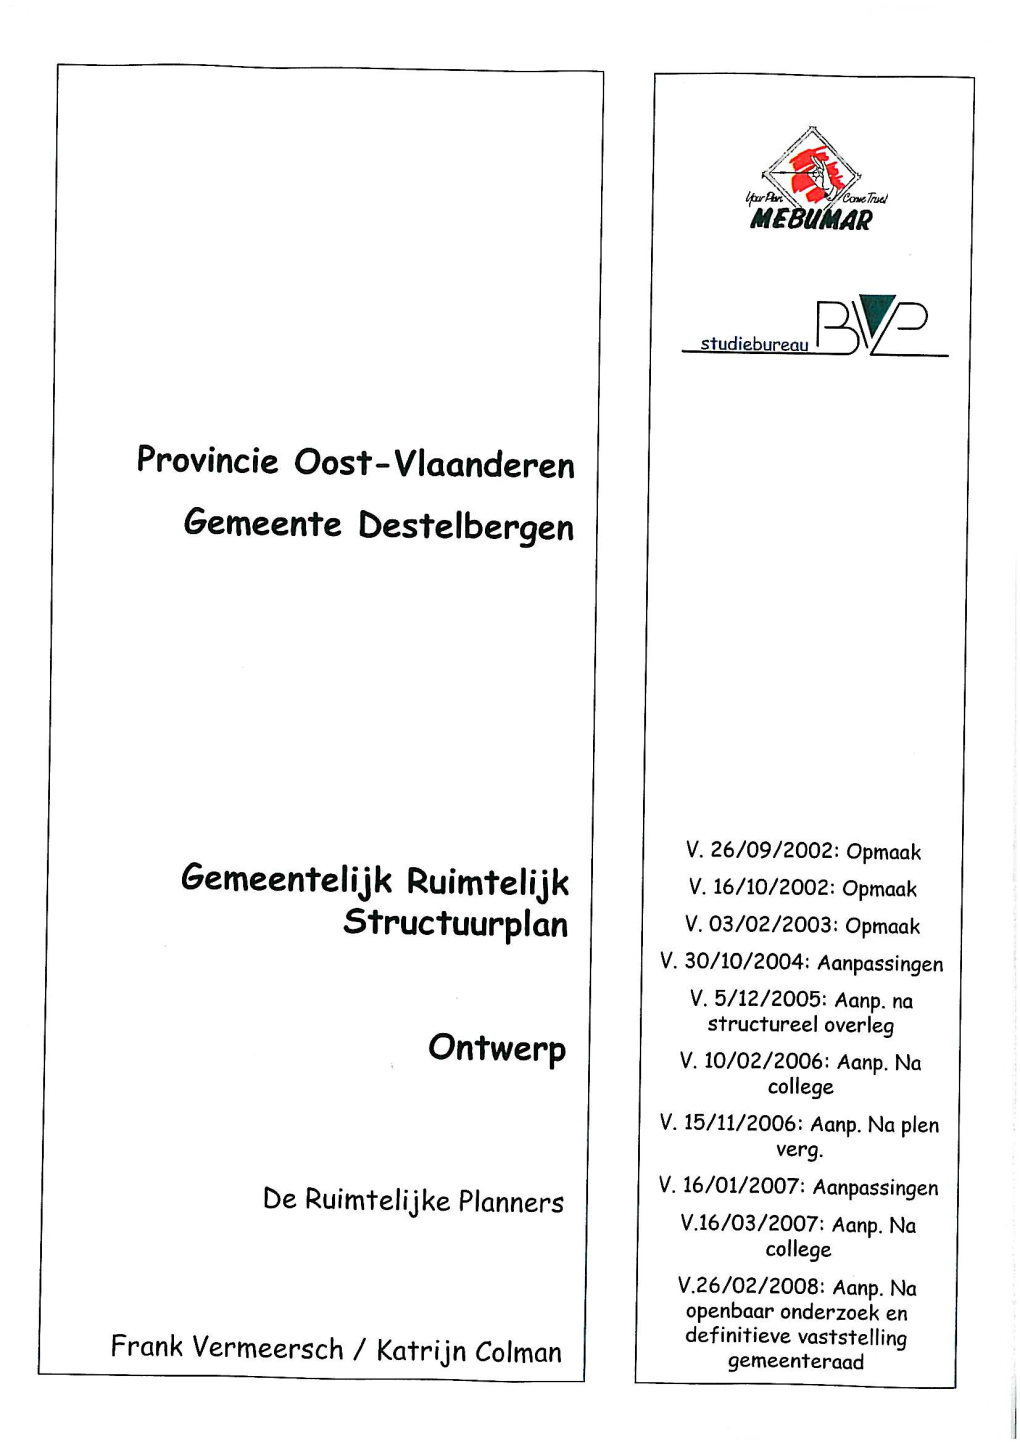 Gemeentelijk Ruimtelijk Structuurplan Op Te Maken Van Zodra Het Ruimtelijk Structuurplan Vlaanderen (RSV) Werd Bekrachtigd (23.09.¶97)